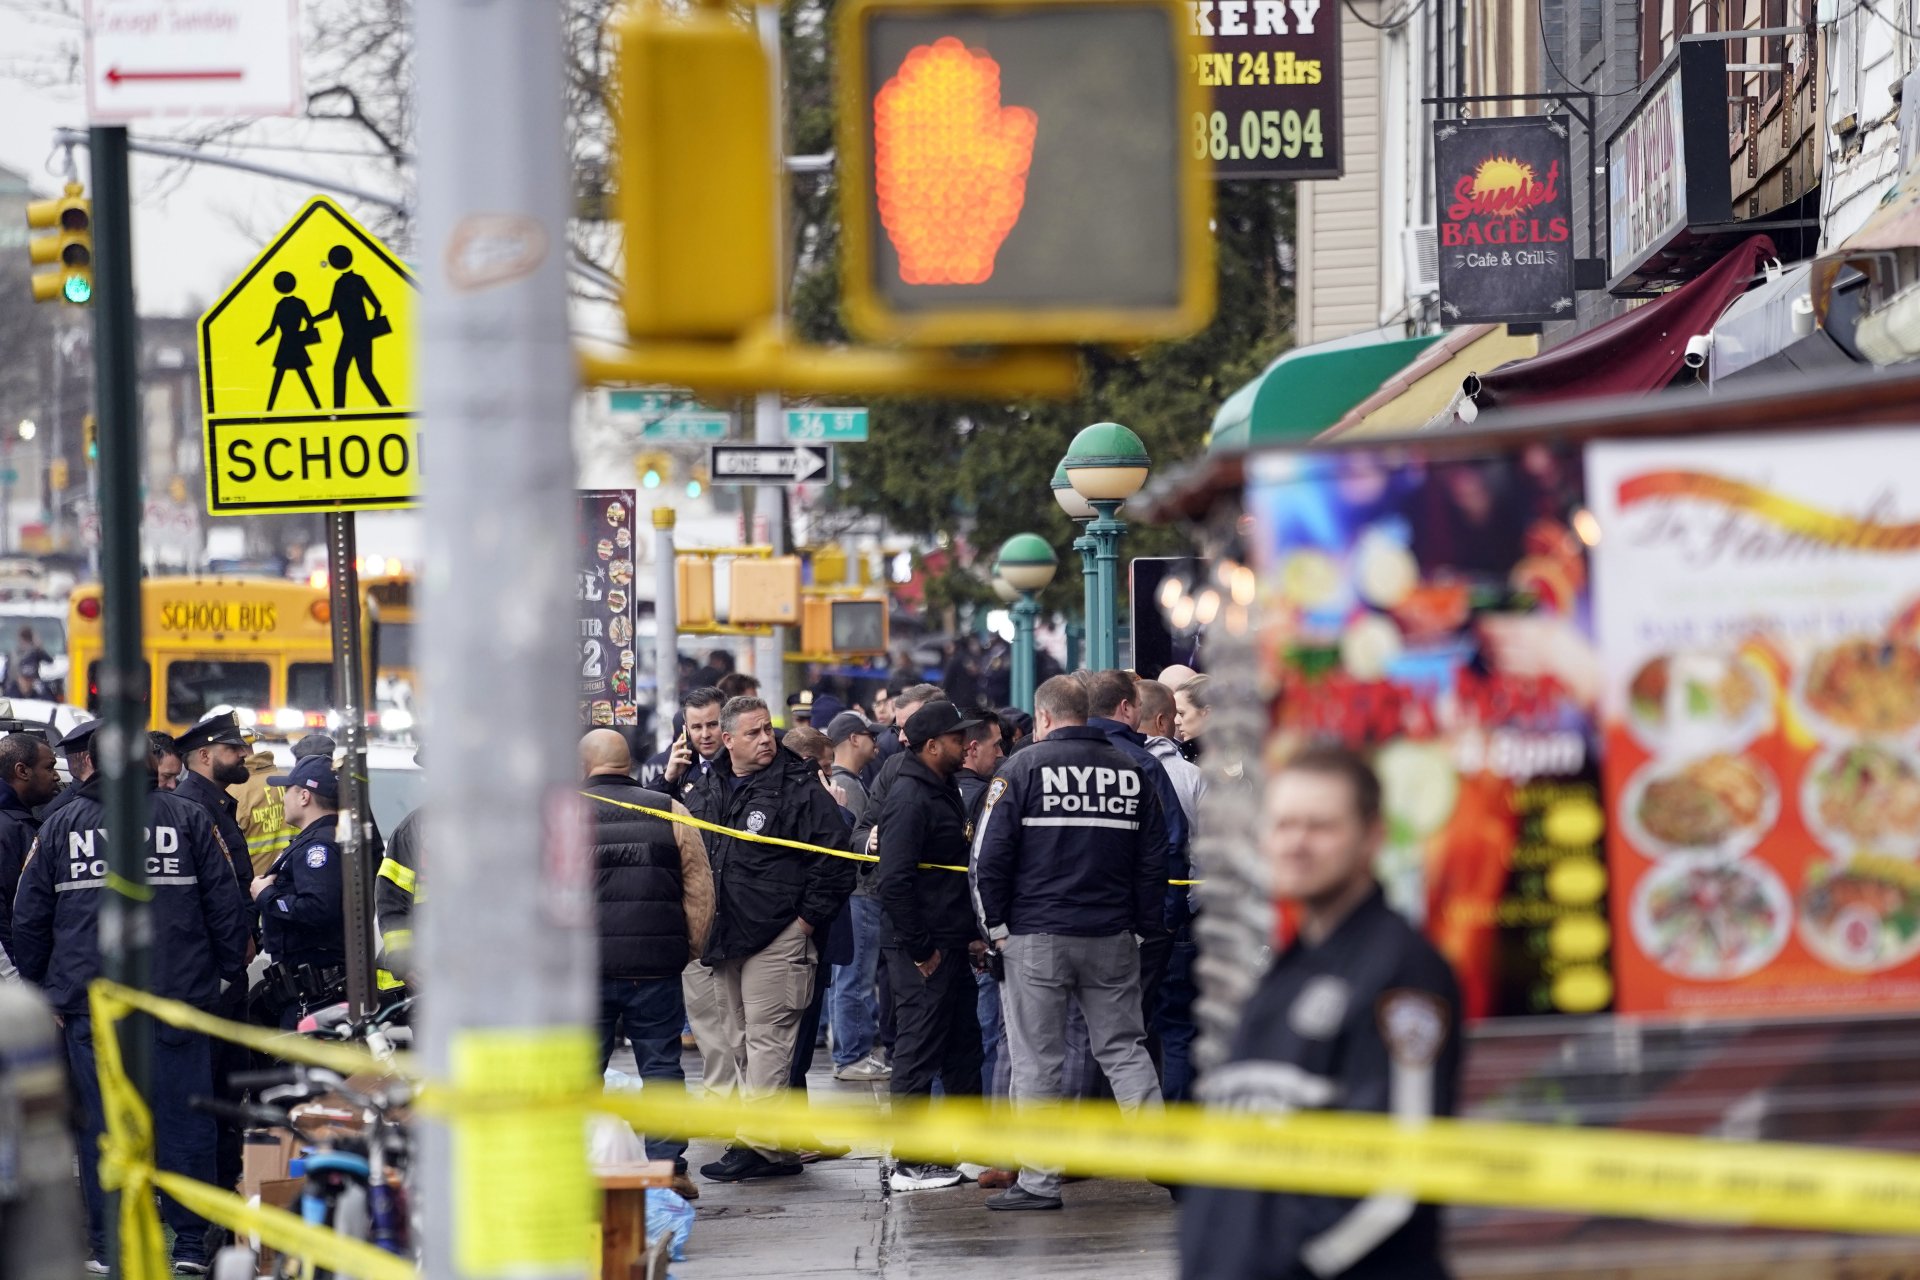 Пред метроспирката в Бруклин, къзето бе извършена атаката от чернокож стрелец